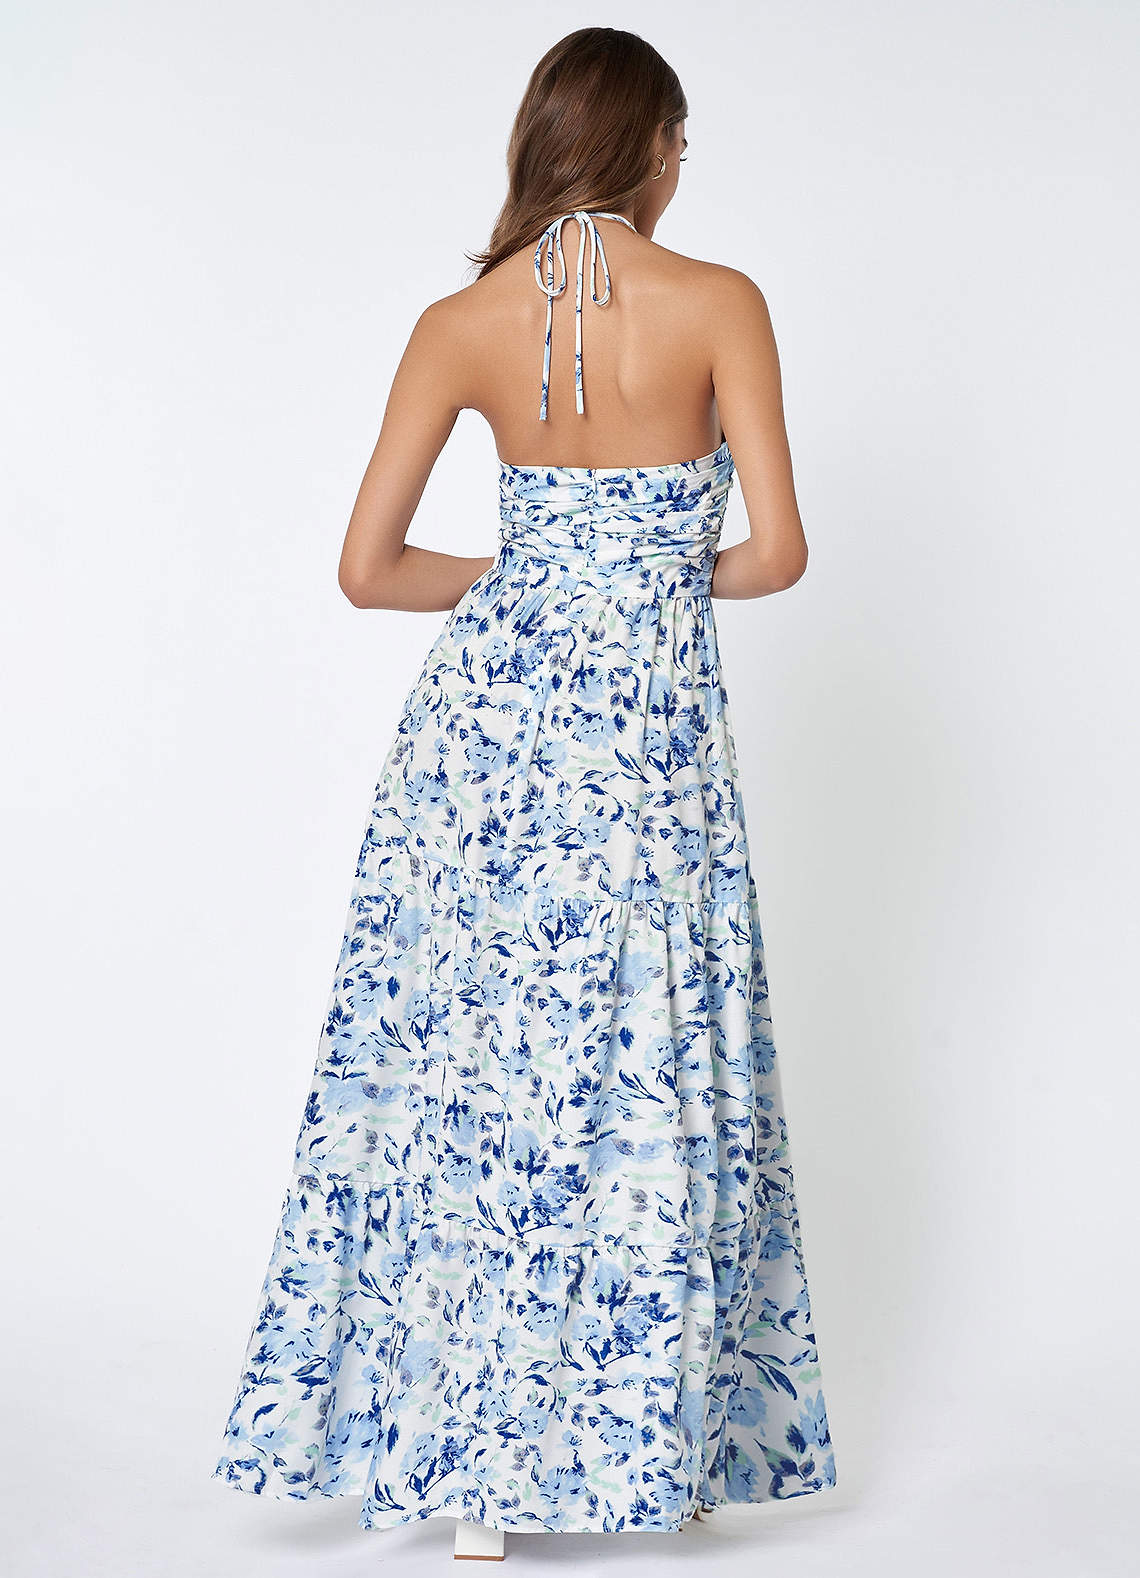 Allora Halter Dress - Blue Floral